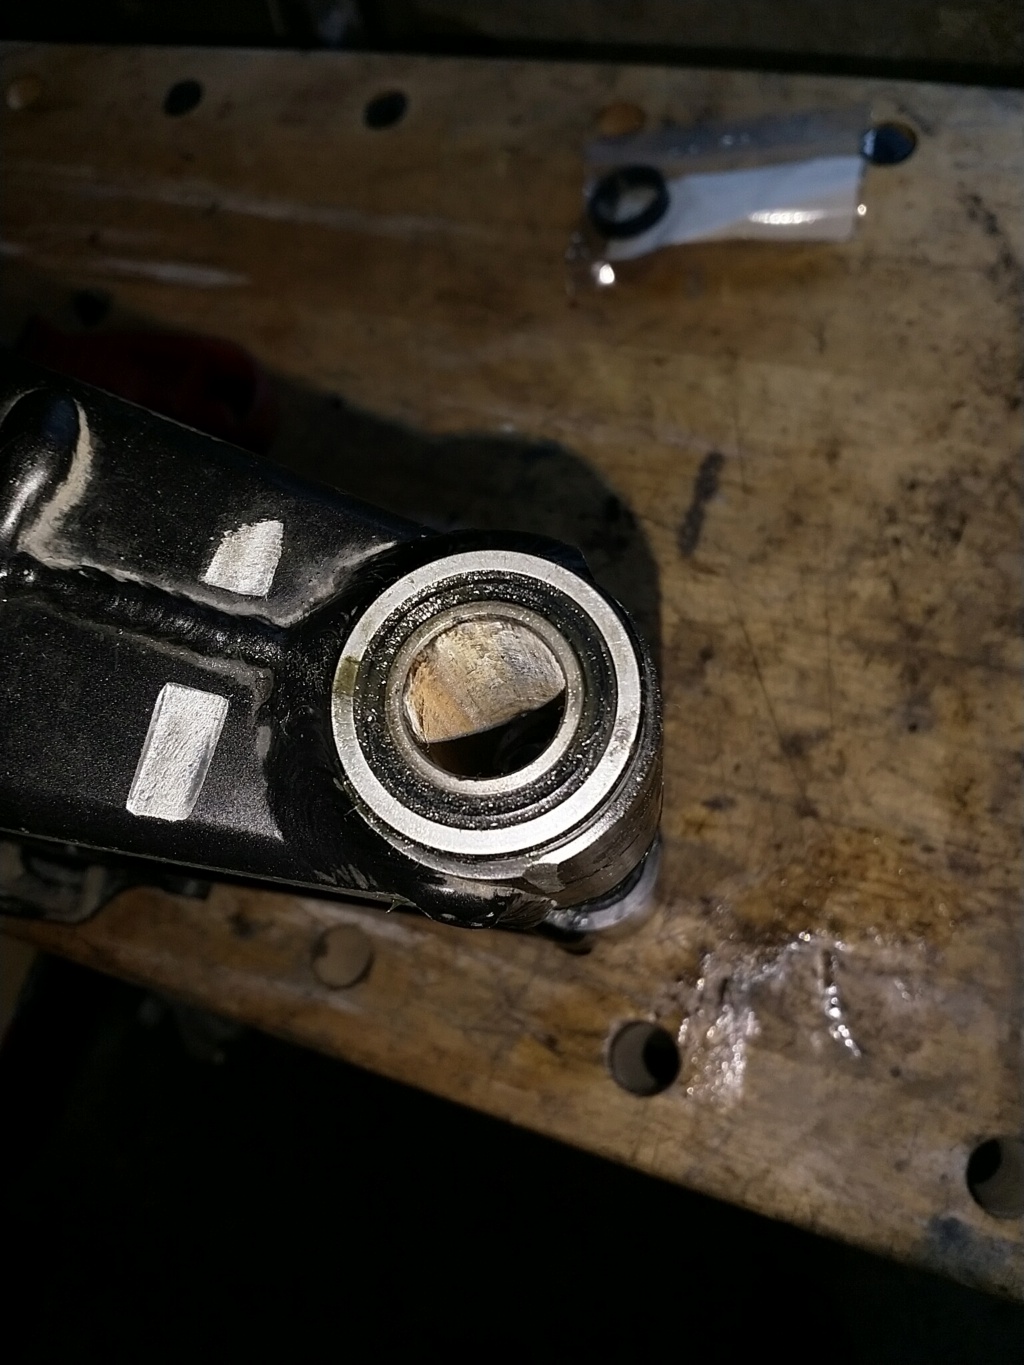 Swingarm bearing seals findings and upgrade (hopefully) Img_2142